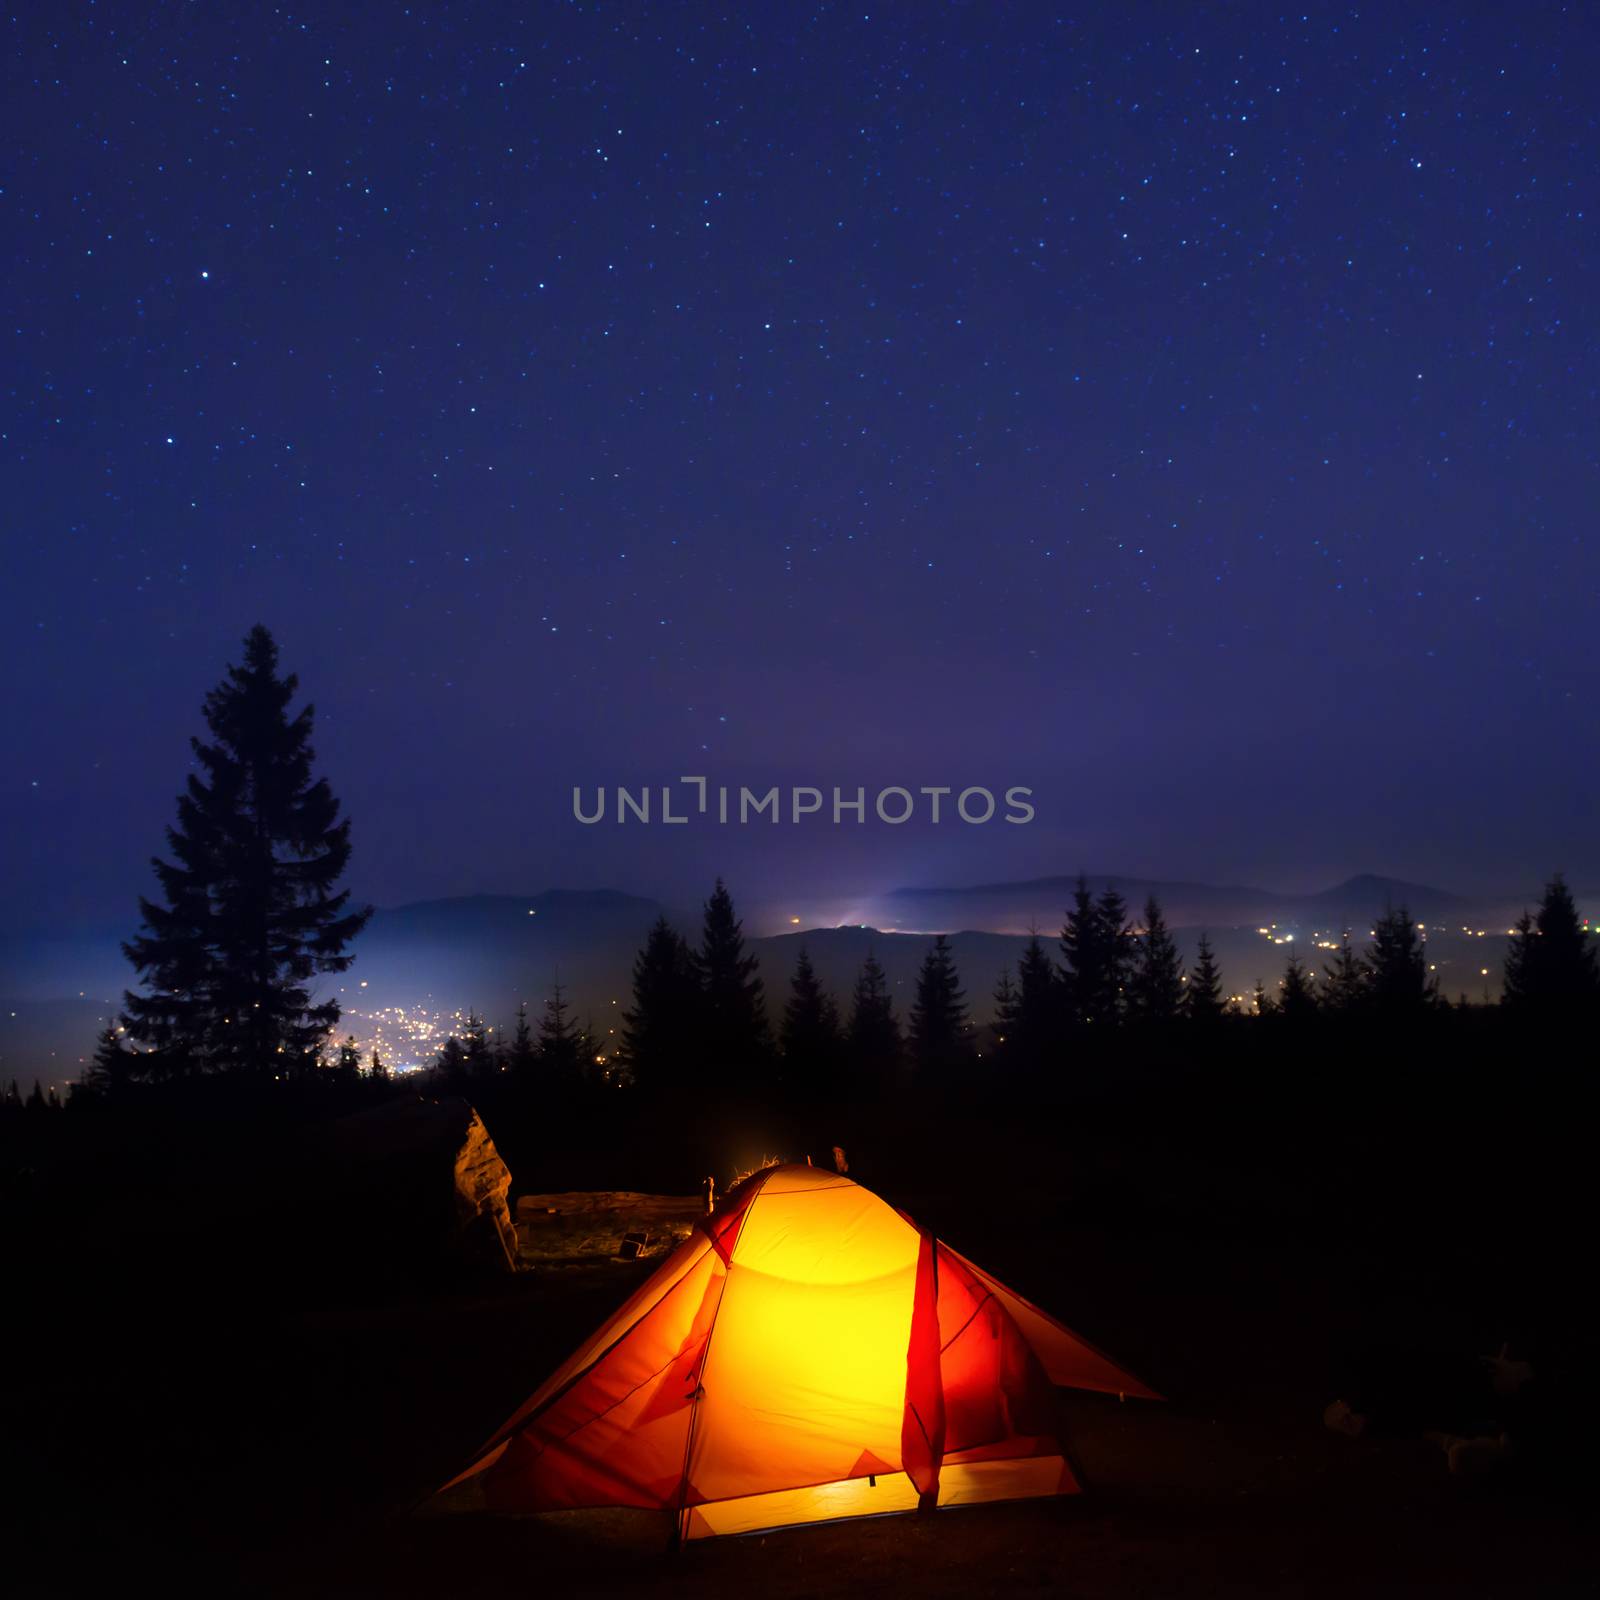 Illuminated orange camping tent by vapi